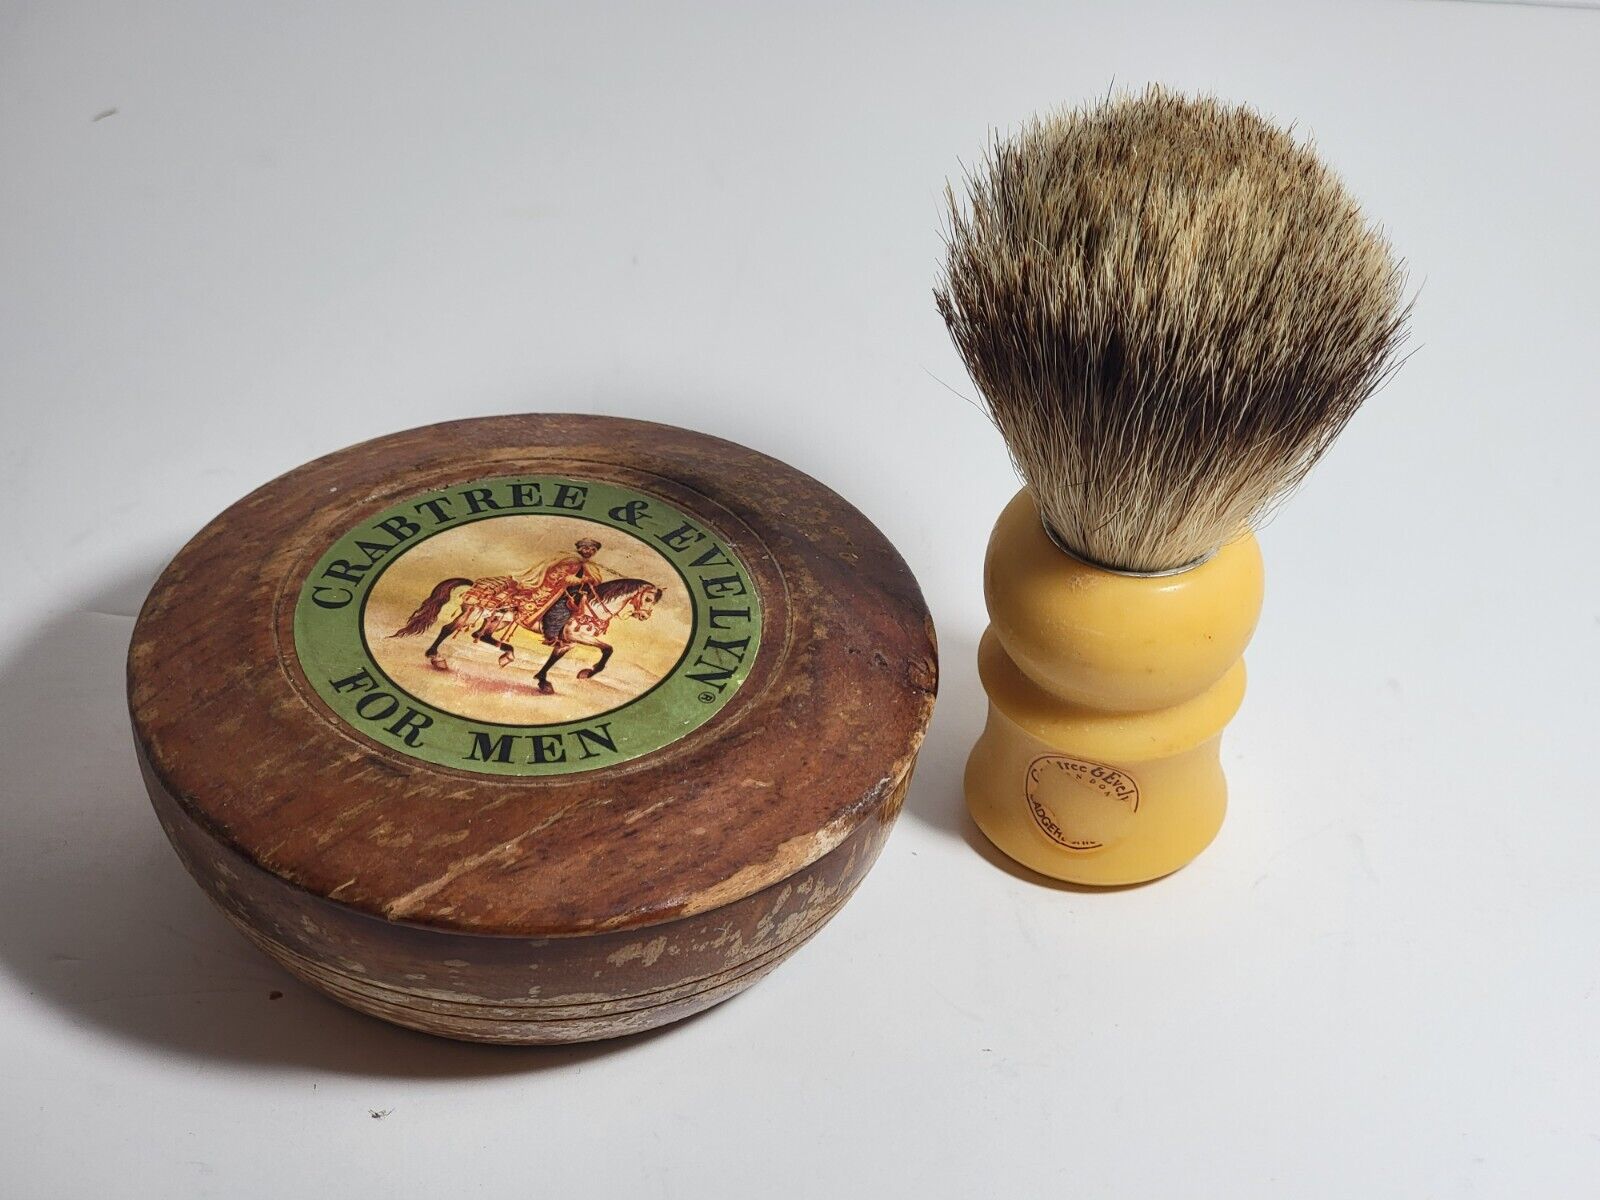 VTG 1980s Crabtree & Evelyn 3.5oz Shaving Soap For Men In Wooden Box + Brush